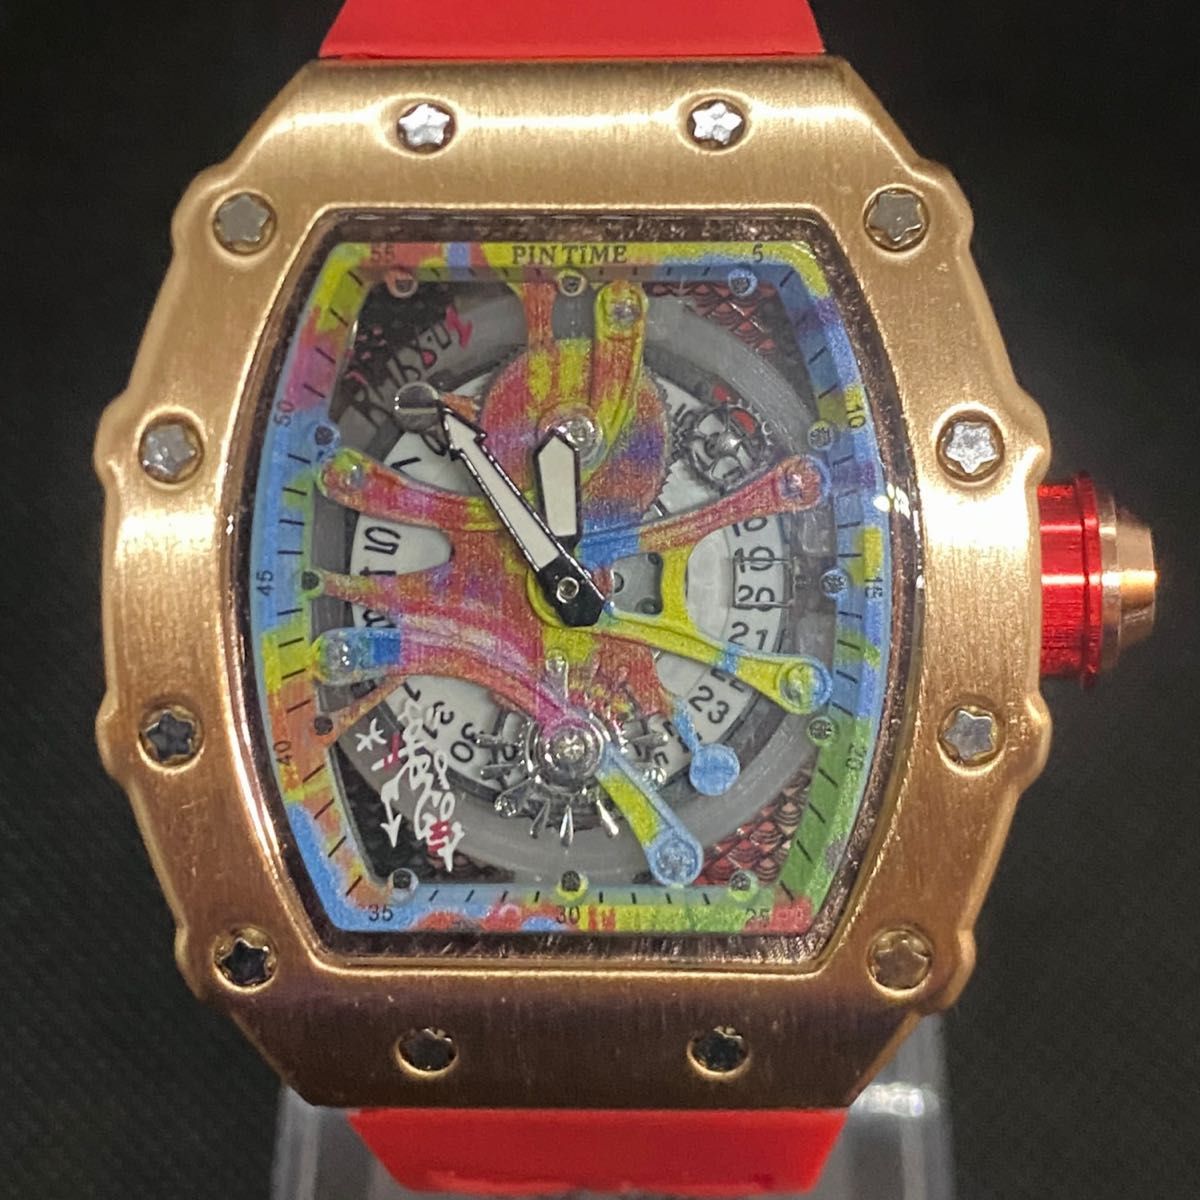 【日本未発売 アメリカ価格20,000円】PINTIME トゥールビヨンオマージュ メンズ腕時計 高級腕時計